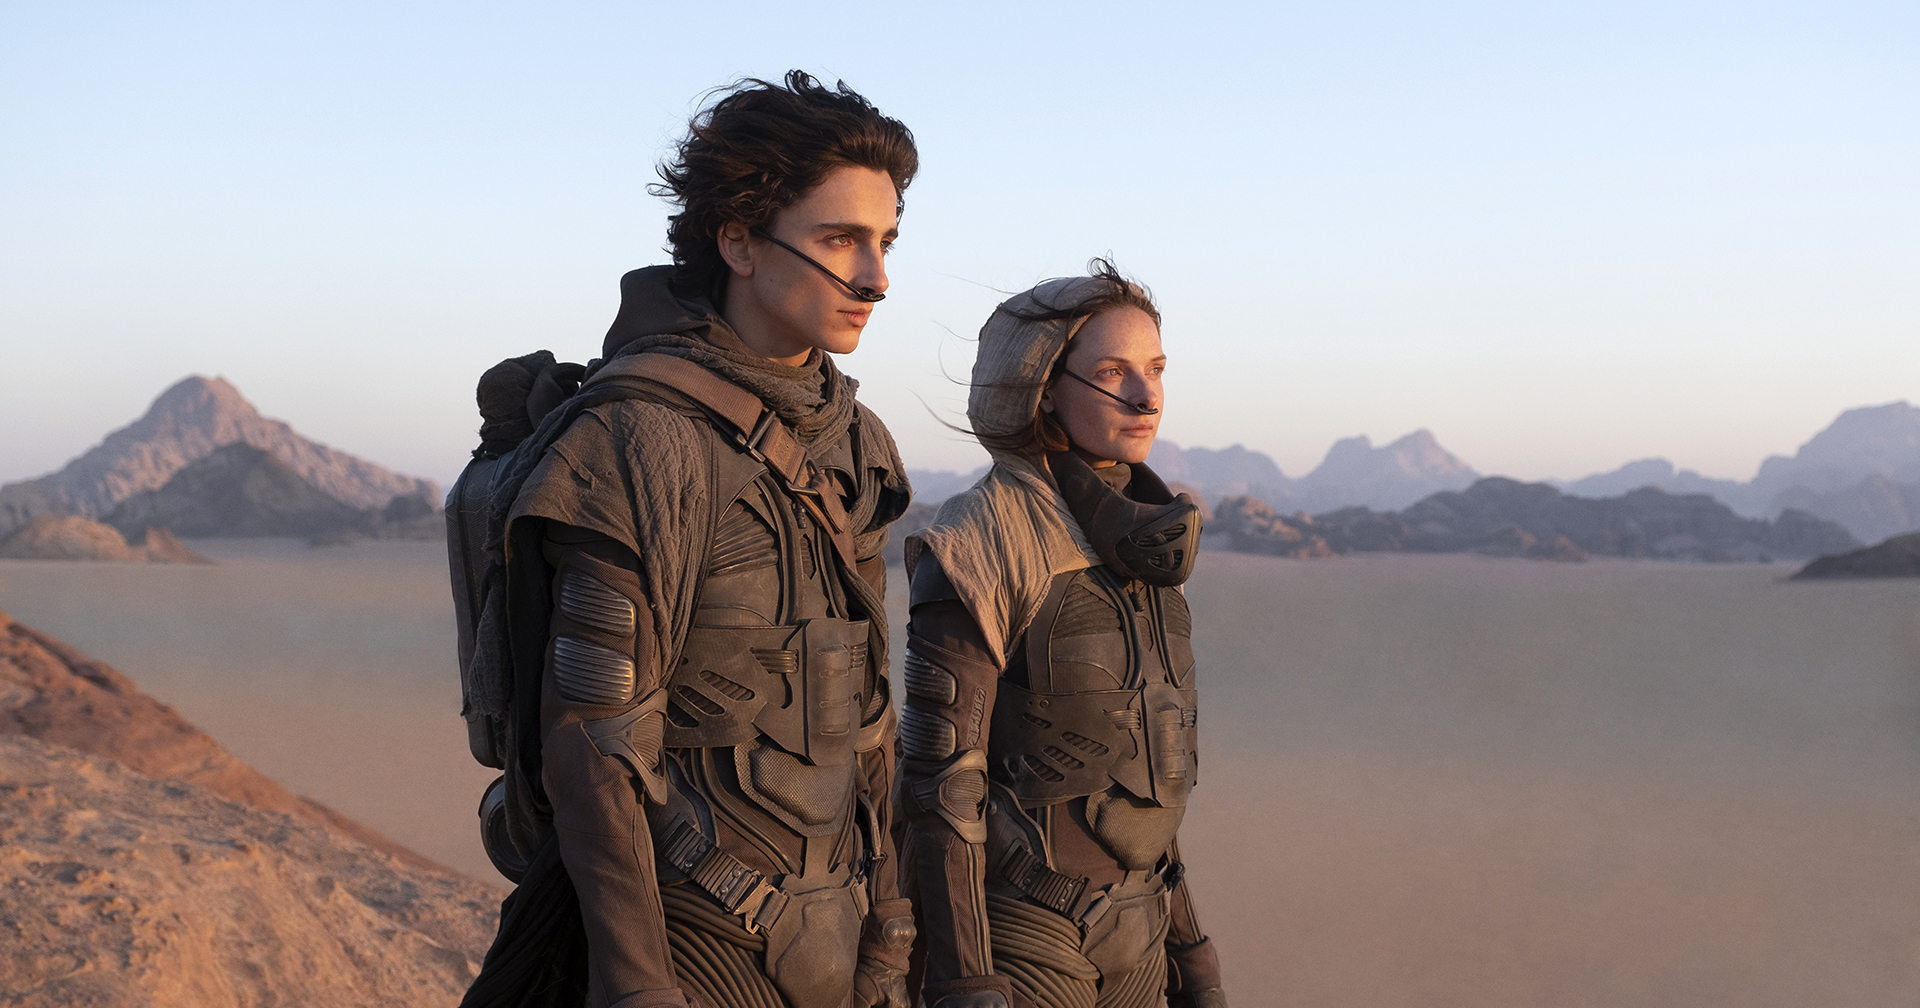 คำวิจารณ์แรก ‘Dune’ จากสื่อต่างประเทศ: ทั้งชื่นชมและผิดหวังกับมหากาพย์นี้